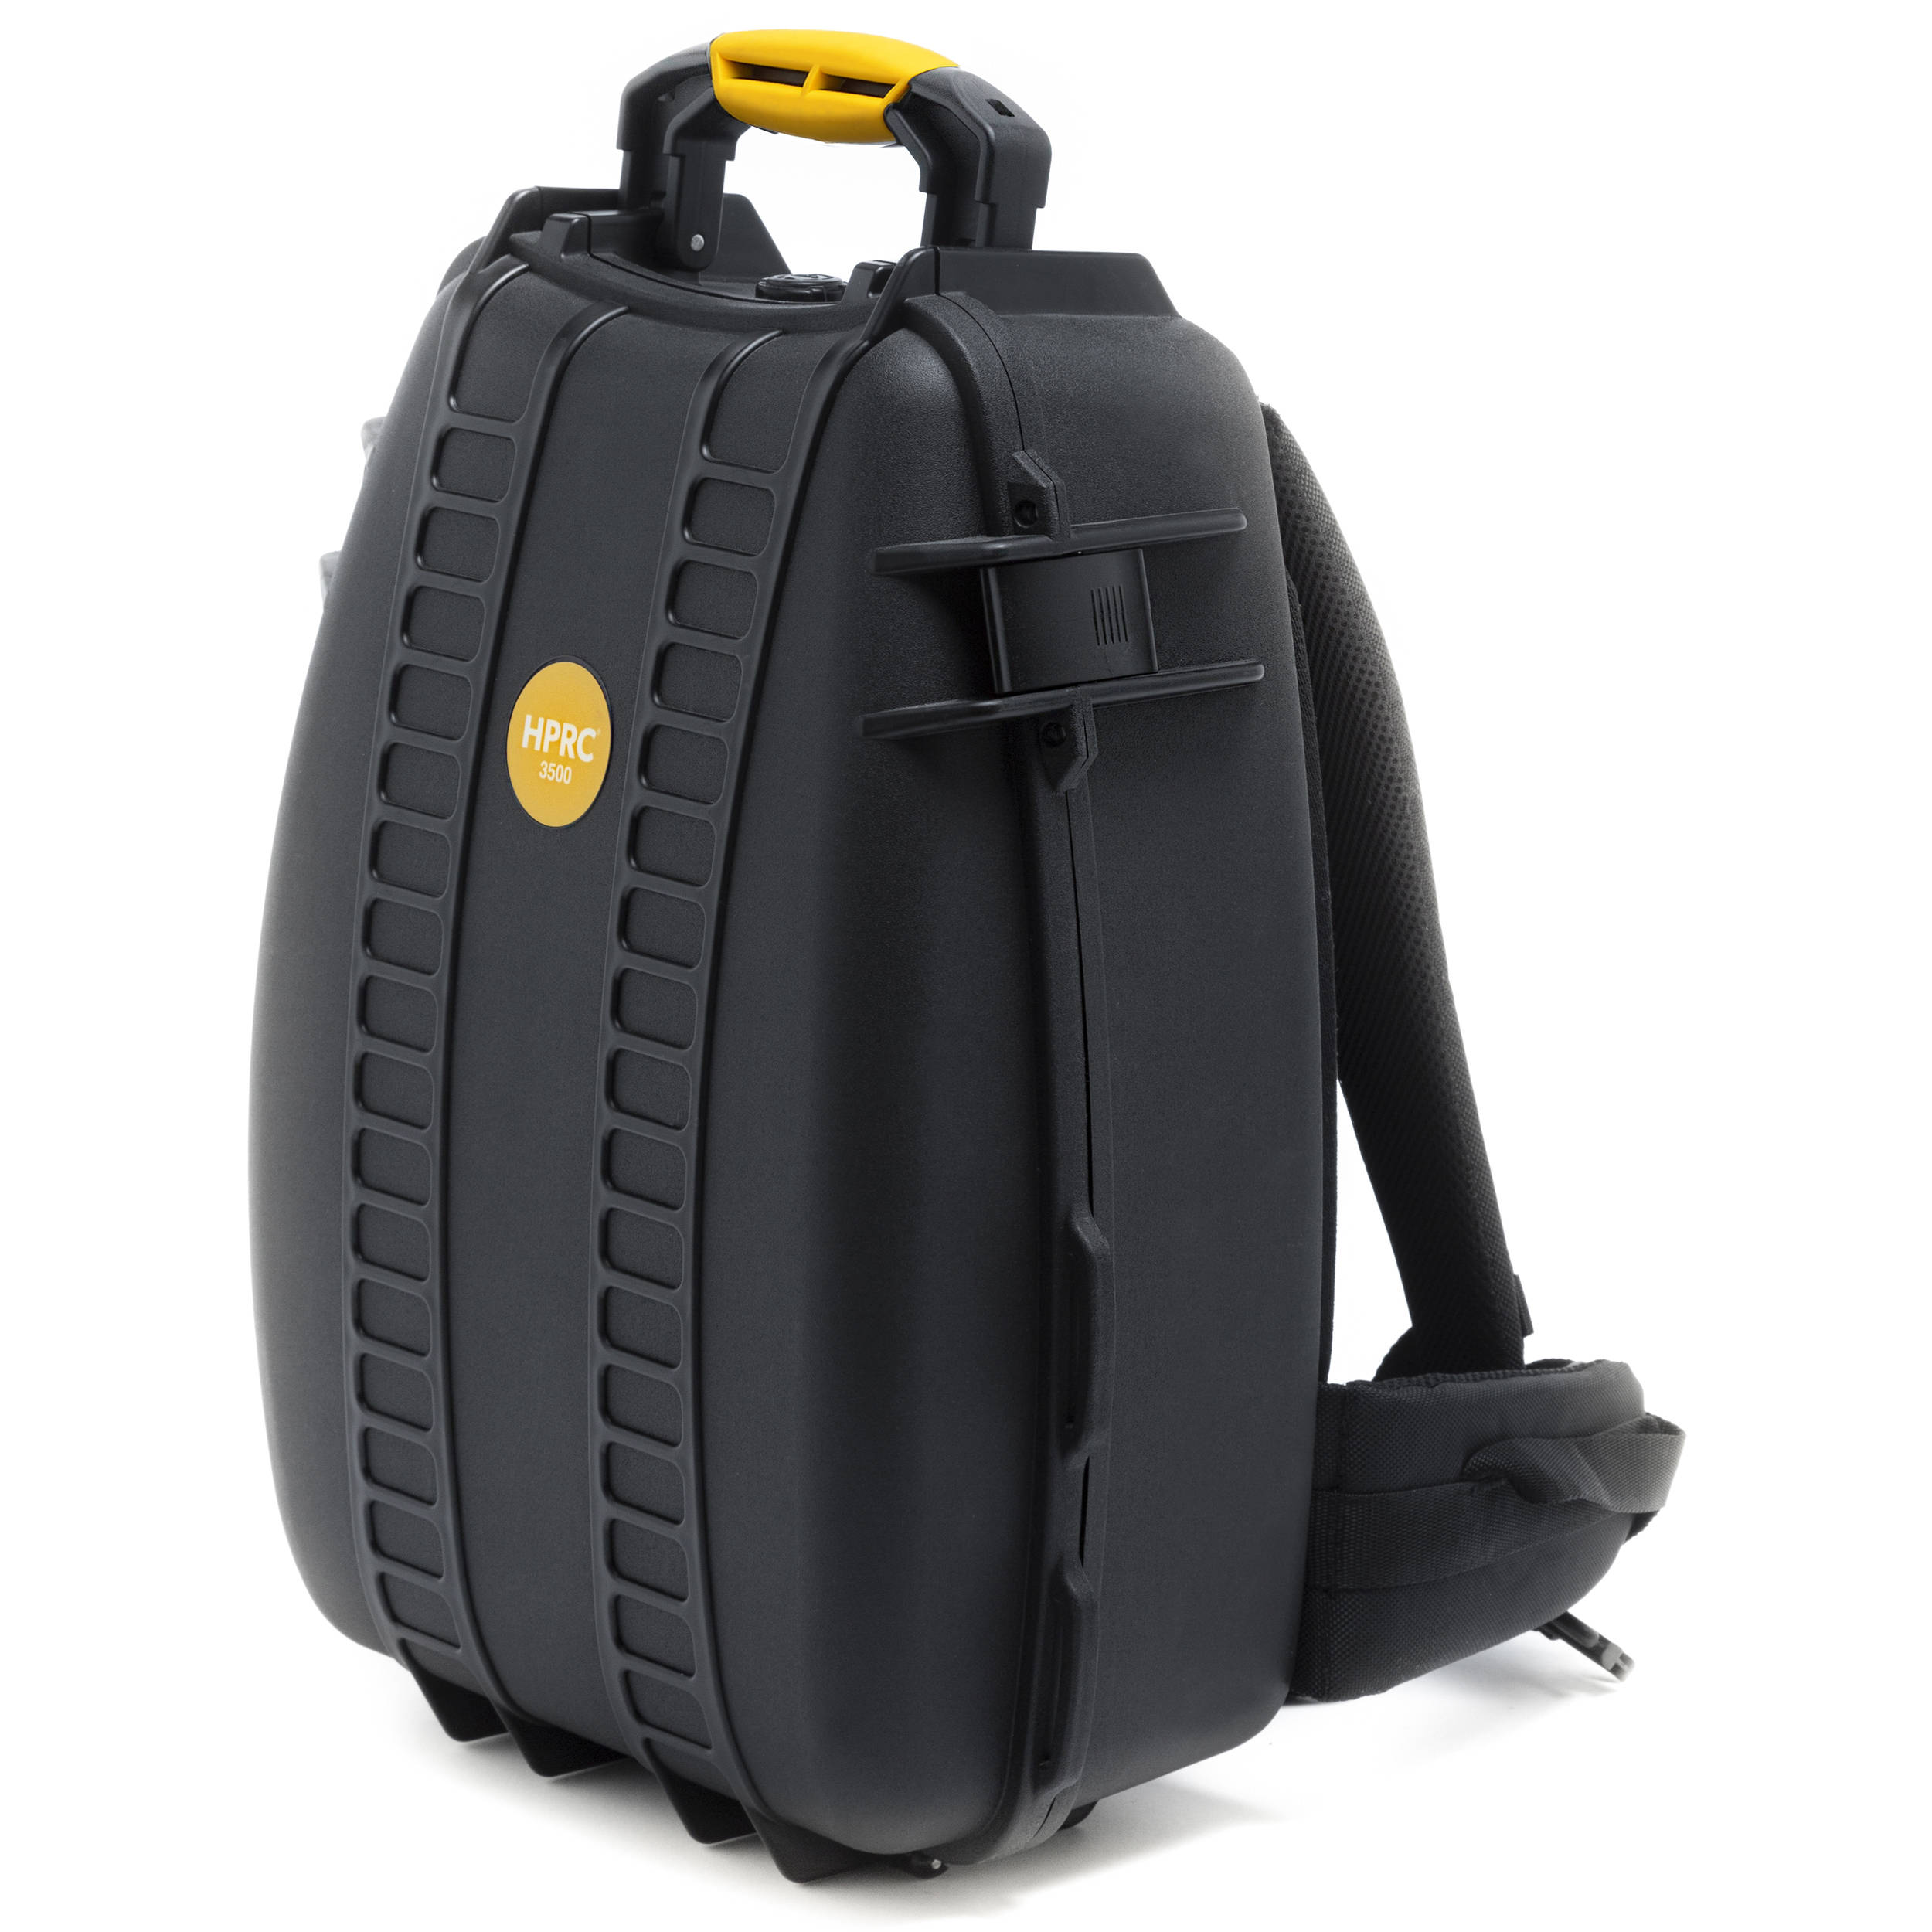 mavic 2 pro backpack